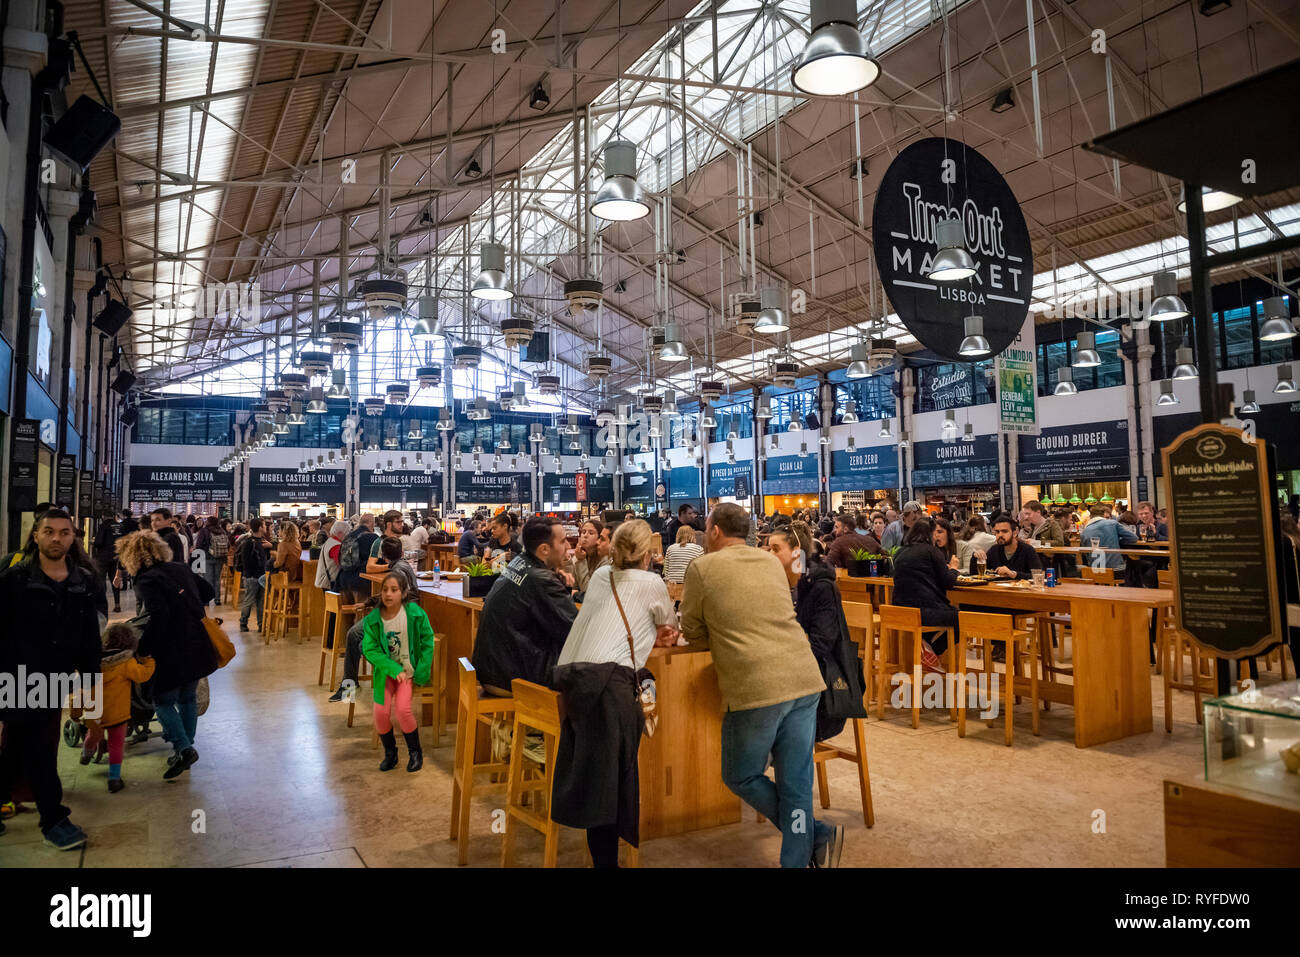 The Mercado da Ribeira food market in Lisbon, Portugal Stock Photo